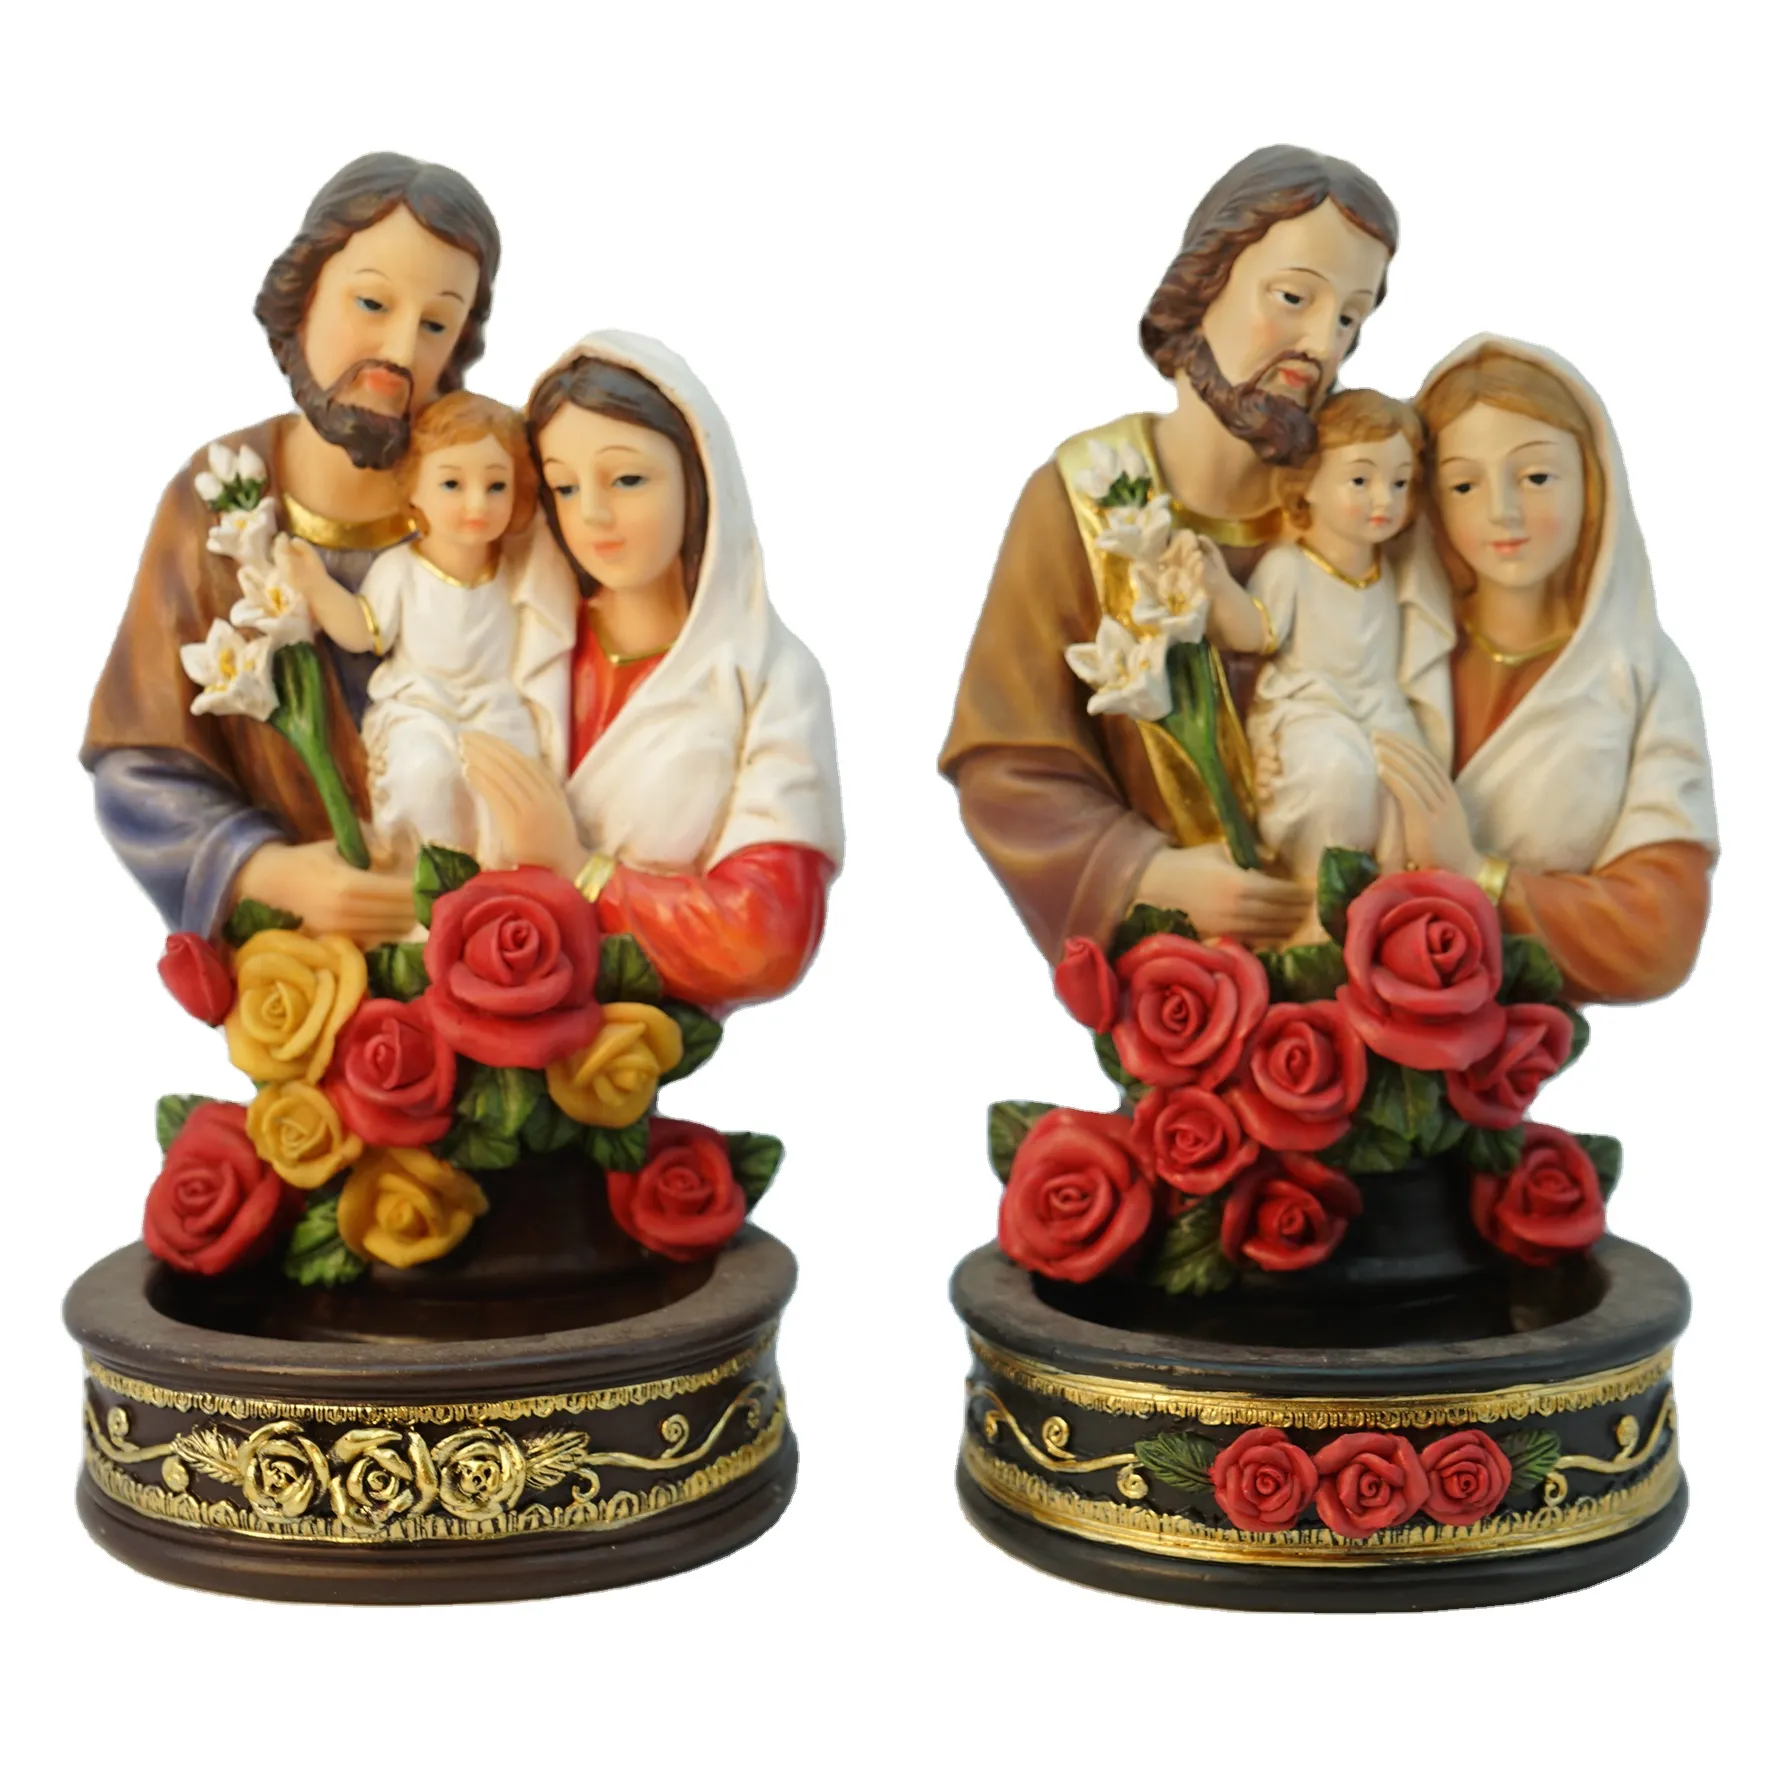 キャンドルポットメアリーとジョセフキリスト降誕の像を持つフラワーレジンカトリック宗教アイテムのトップグレース愛聖家族